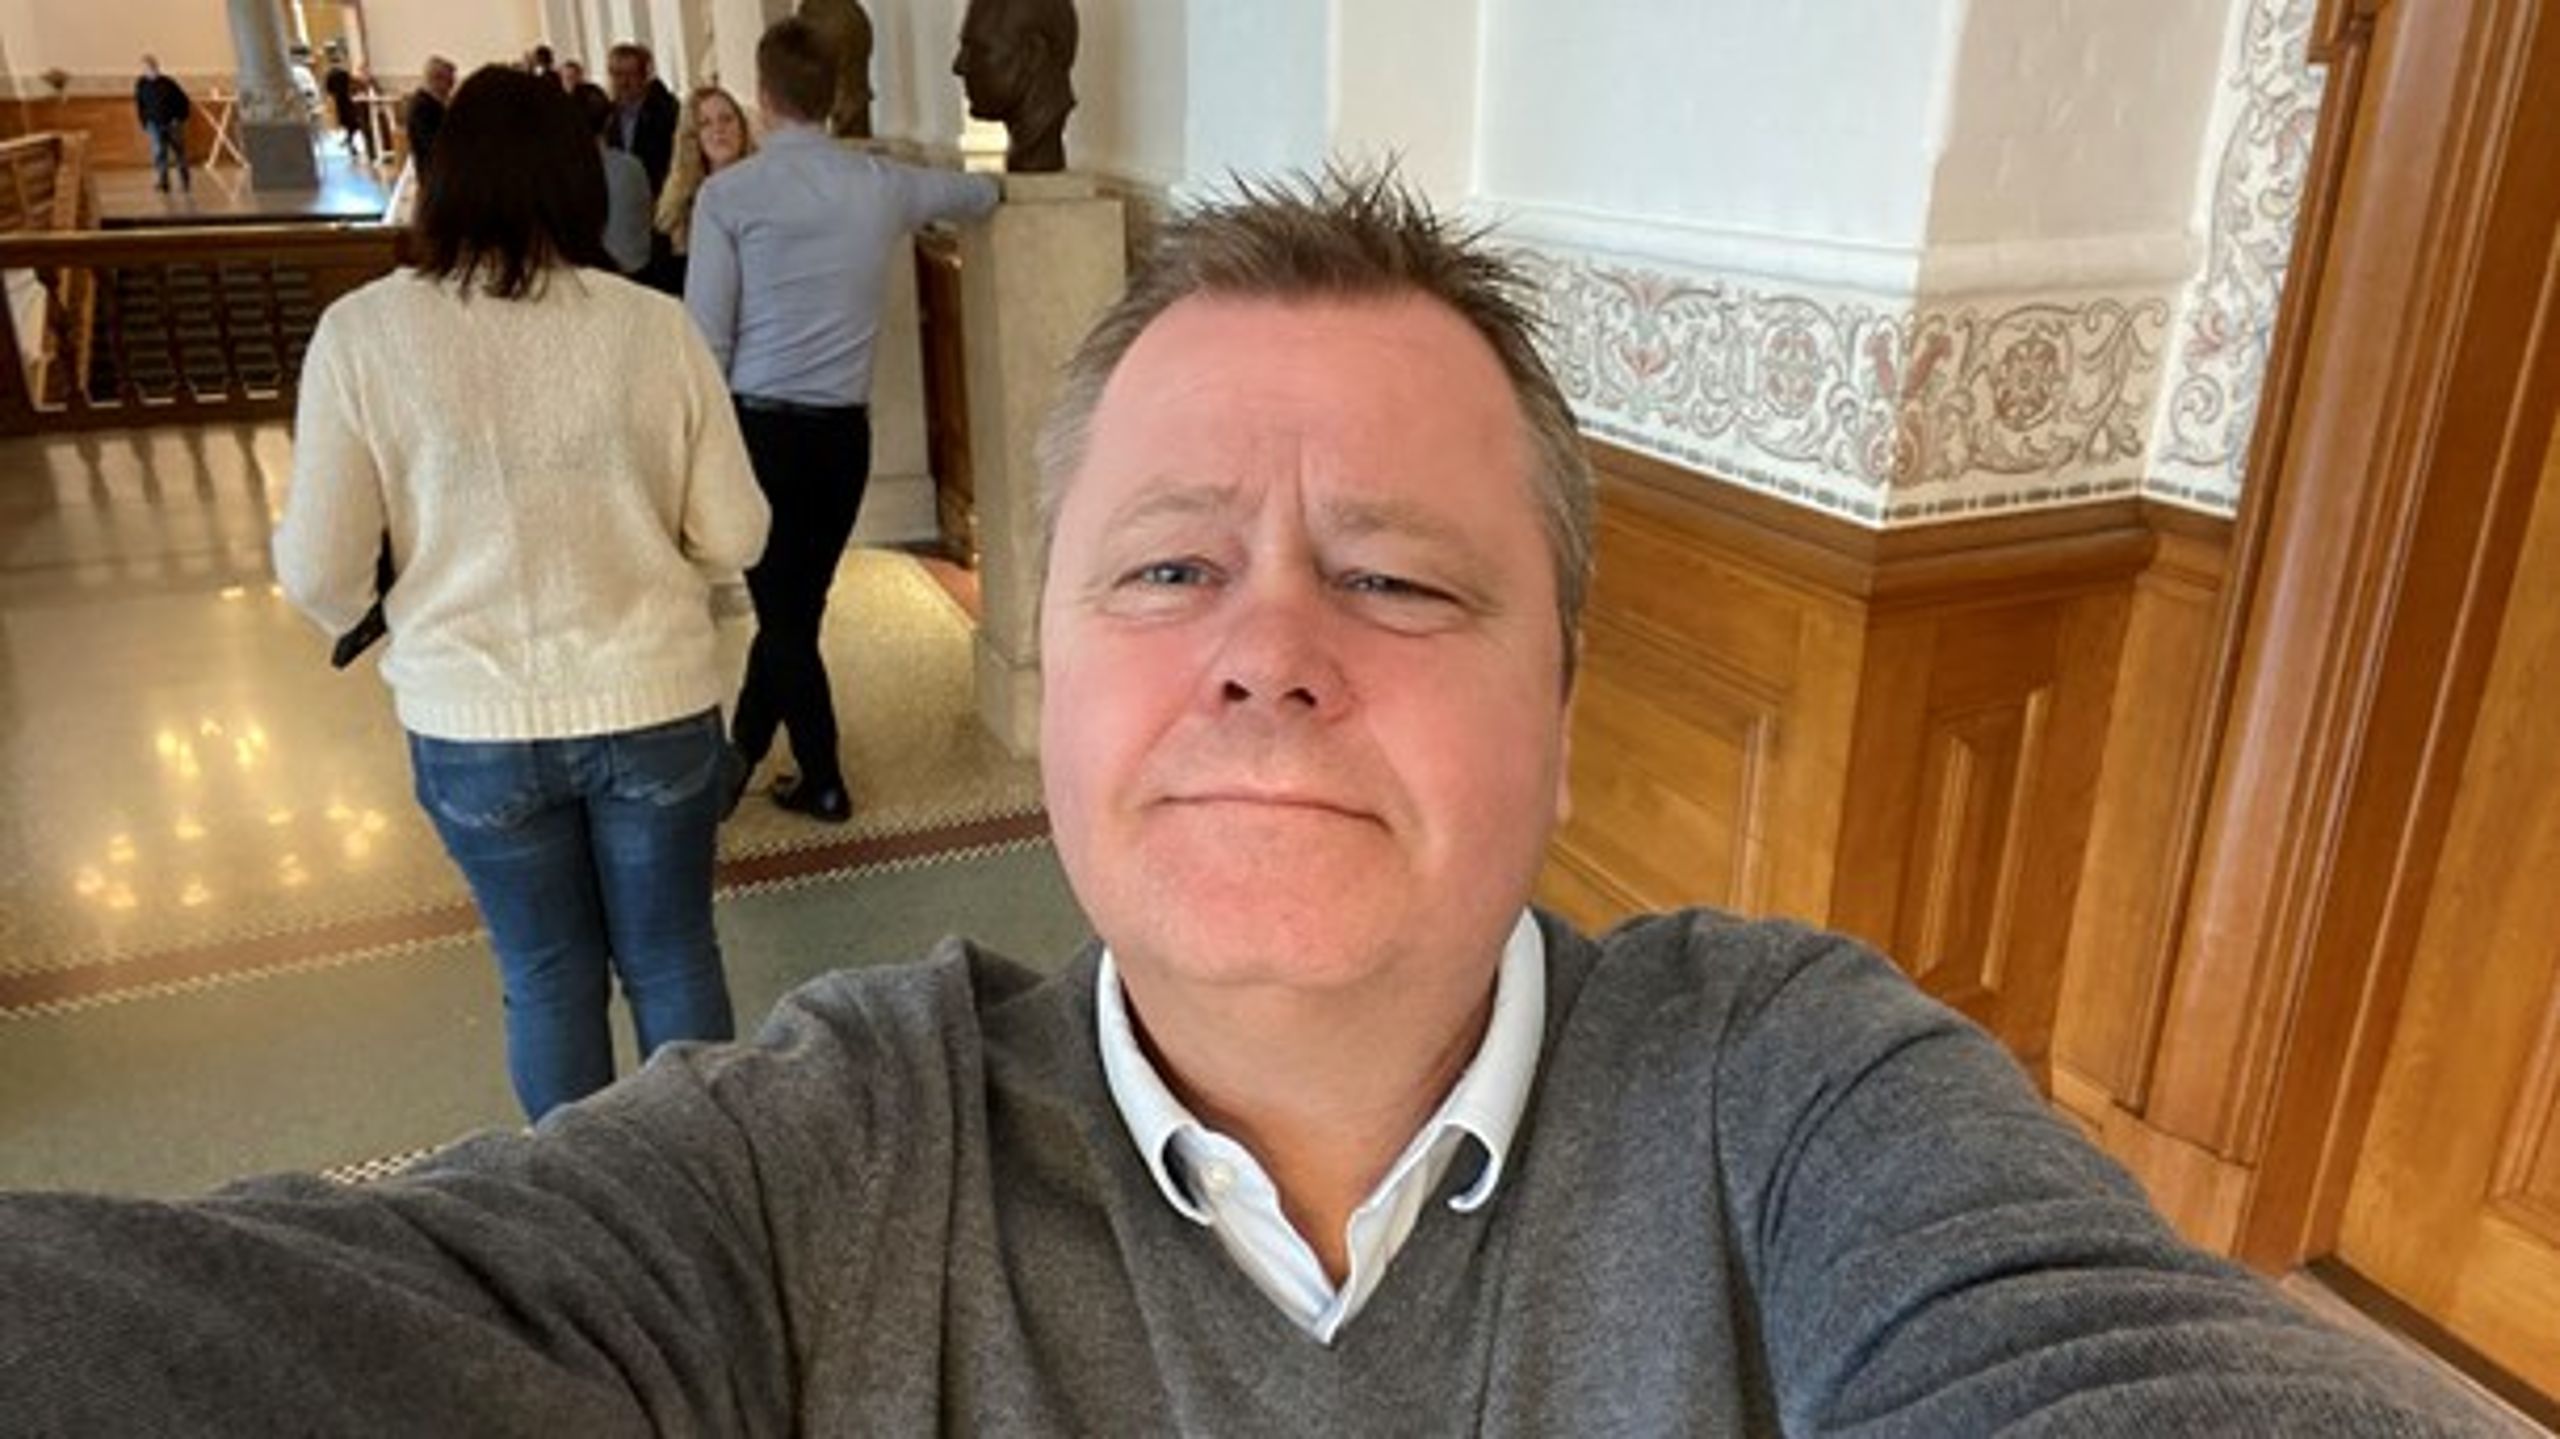 Henrik Møller optræder ikke i billedarkiverne, så vi har valgt at illustrere artiklen med en selfie fra hverdagen på Christiansborg.